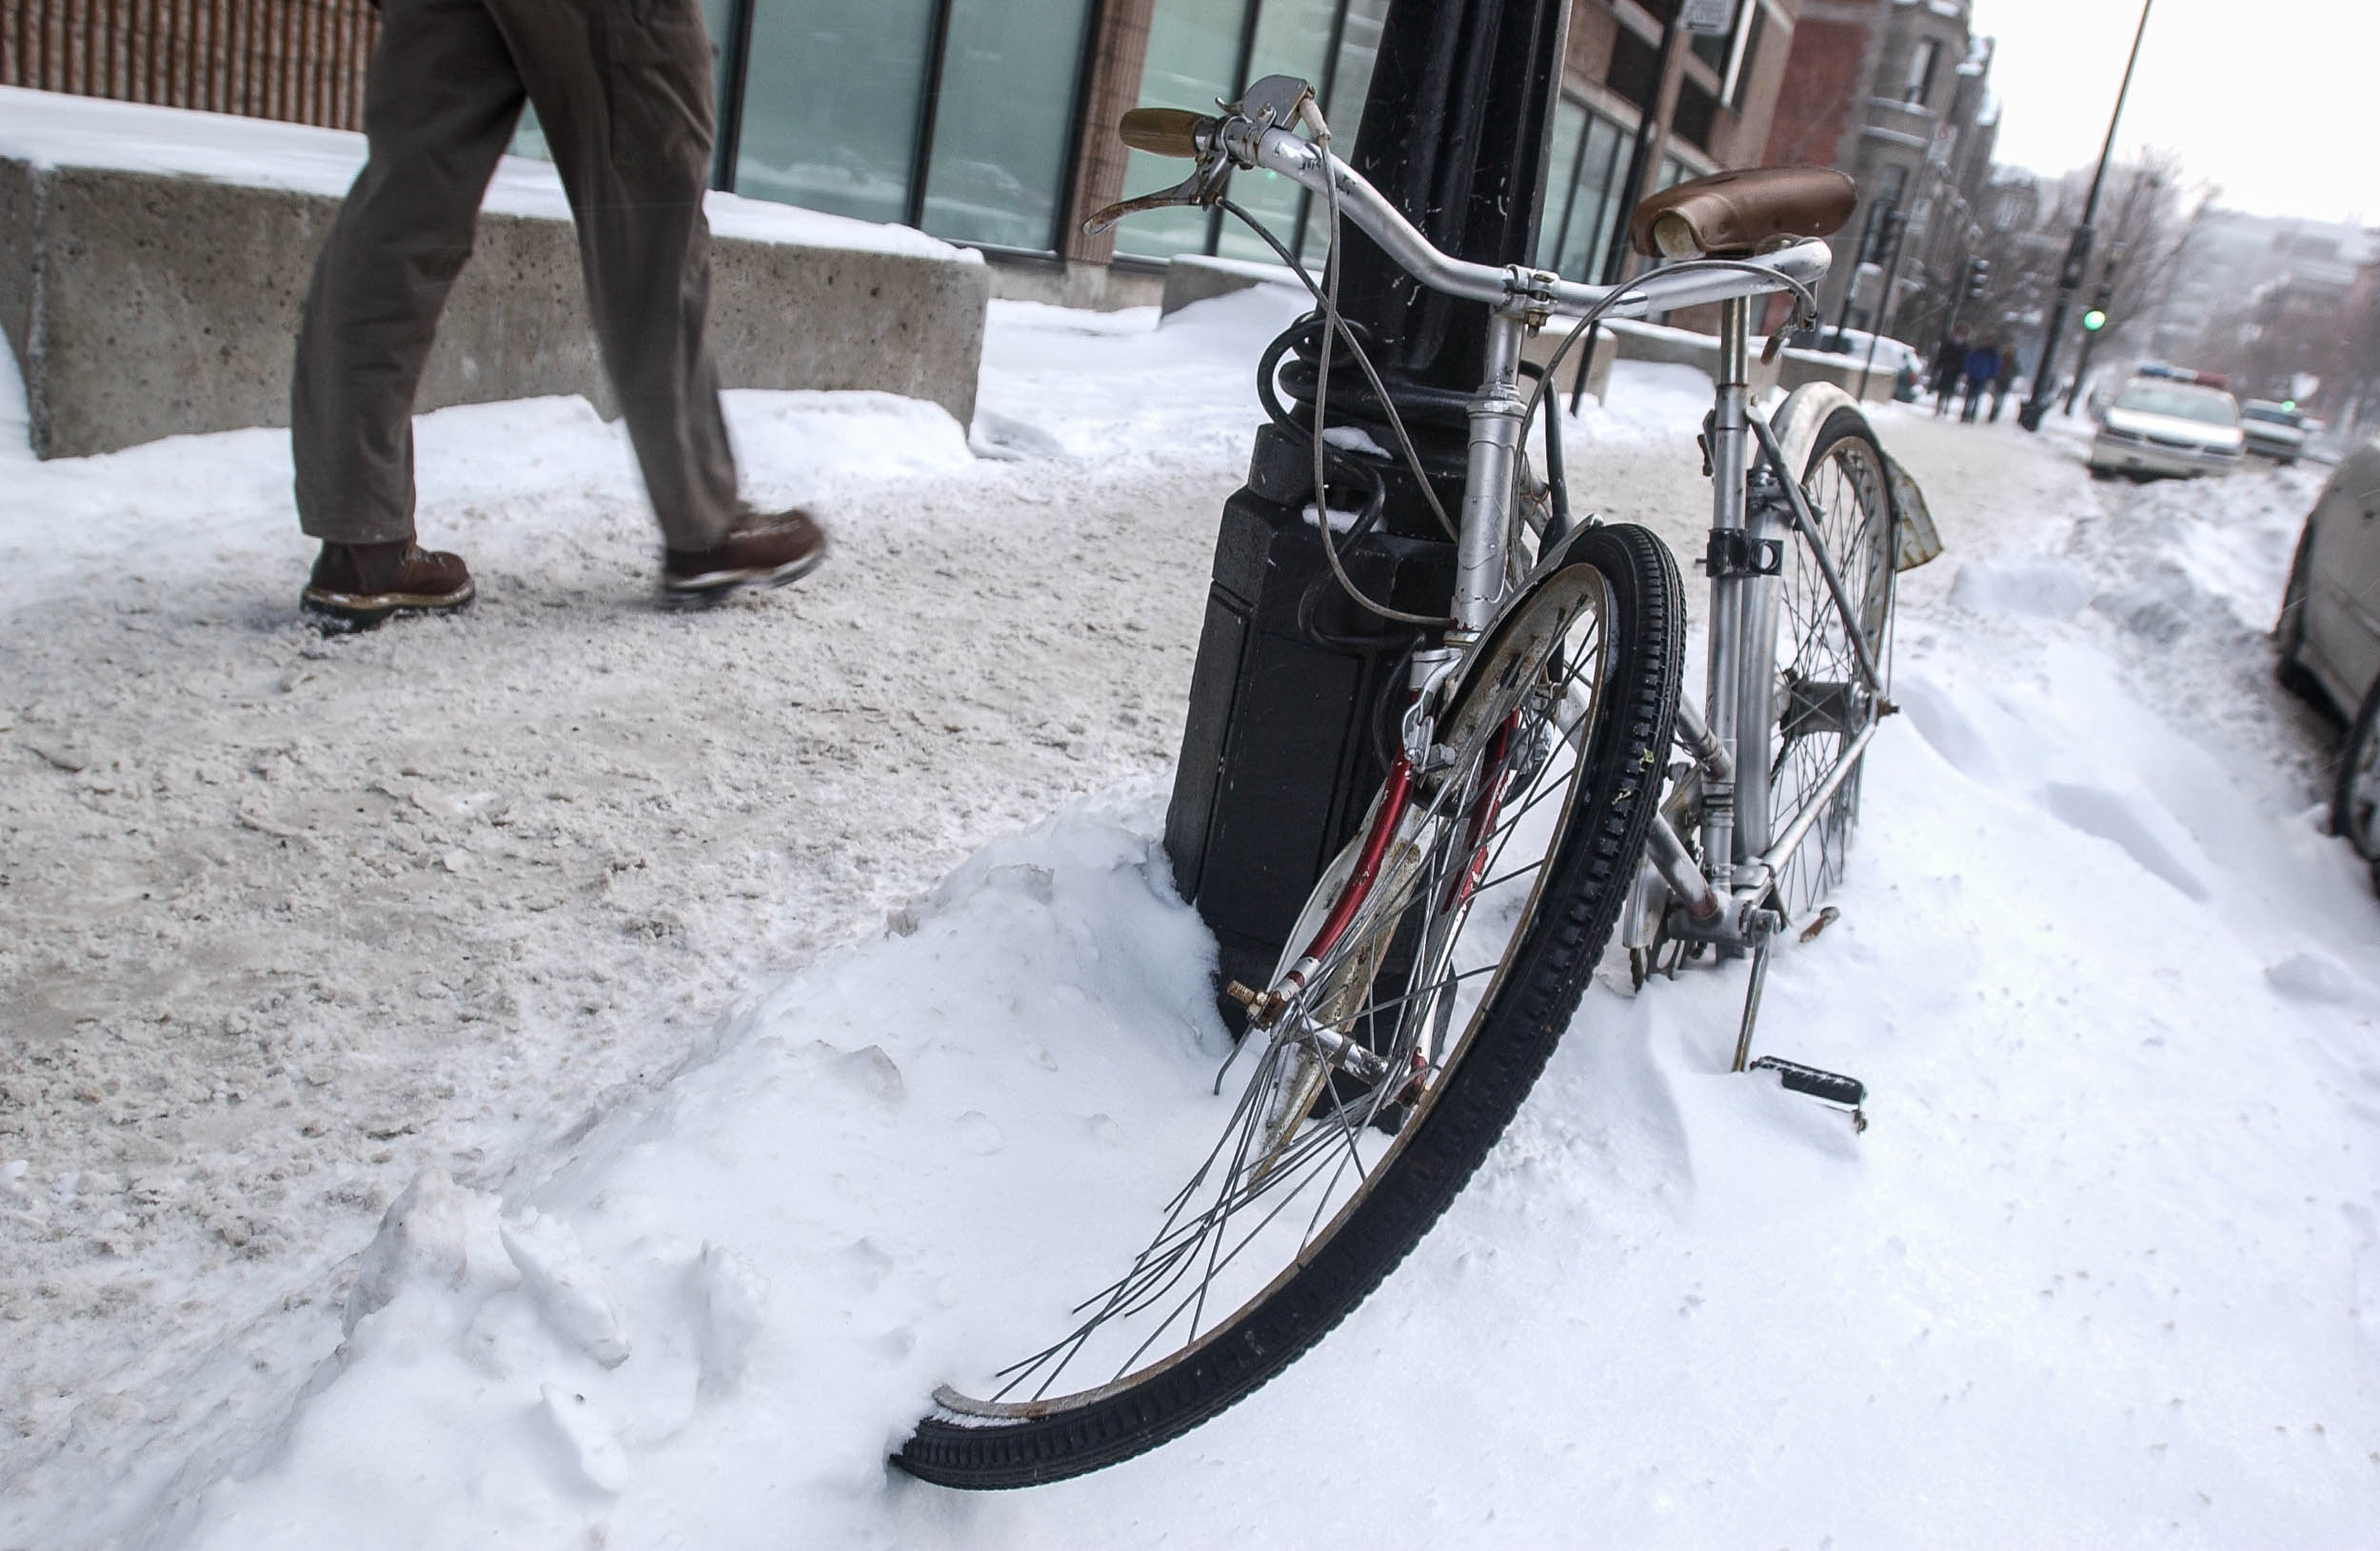  Dure, la vie de vélo à Montréal, souvent cadenassé à un poteau ou un arbre le temps d'un café qui s'allonge ou d'un verre en bonne compagnie, le temps vient changer la vie de cette bécanne en la transformant au fil des saison.
PHOTO / NORMAND BLOUIN